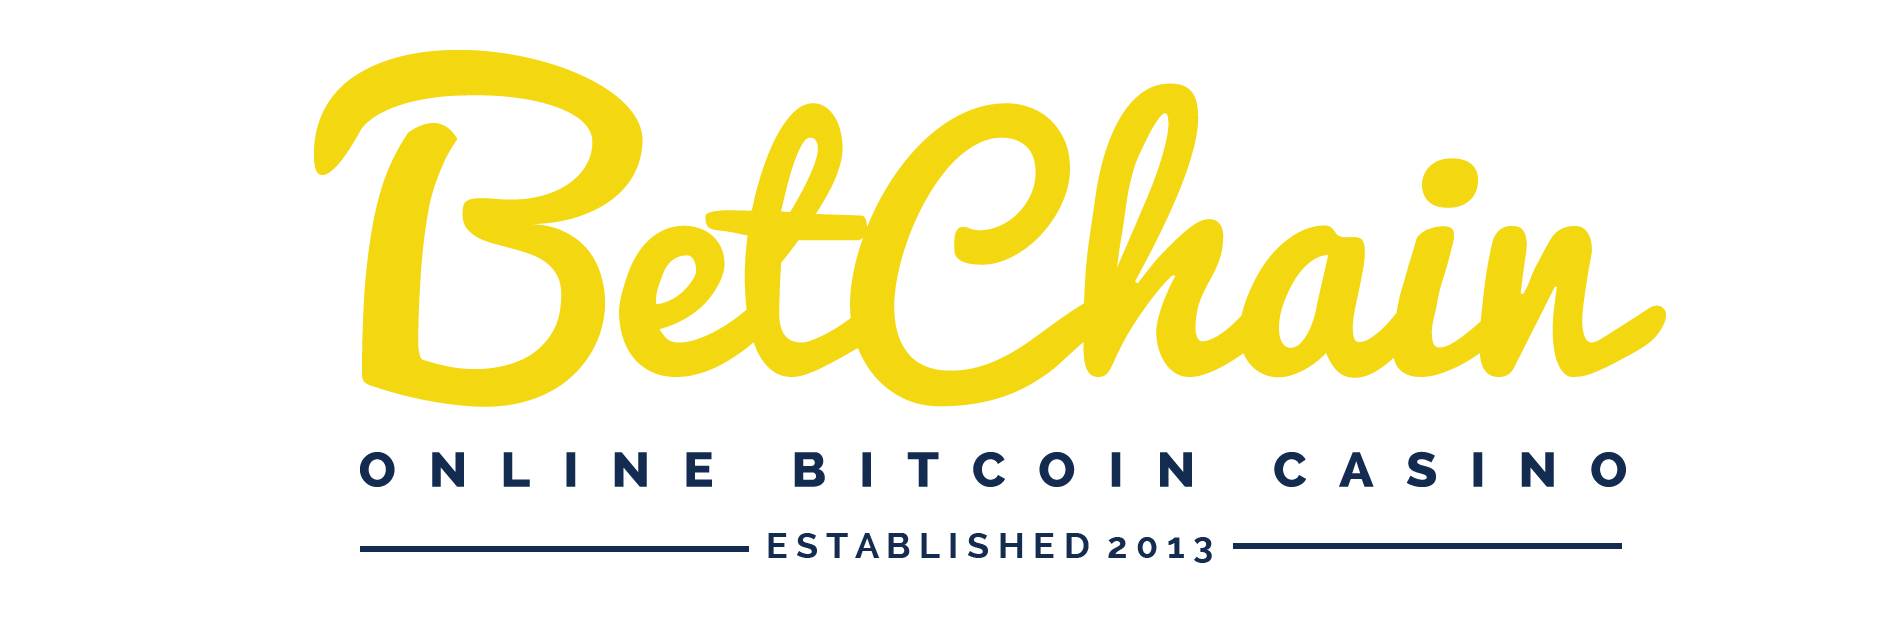 BetChain er en populær spilldestinasjon for Bitcoin og alternativ valuta